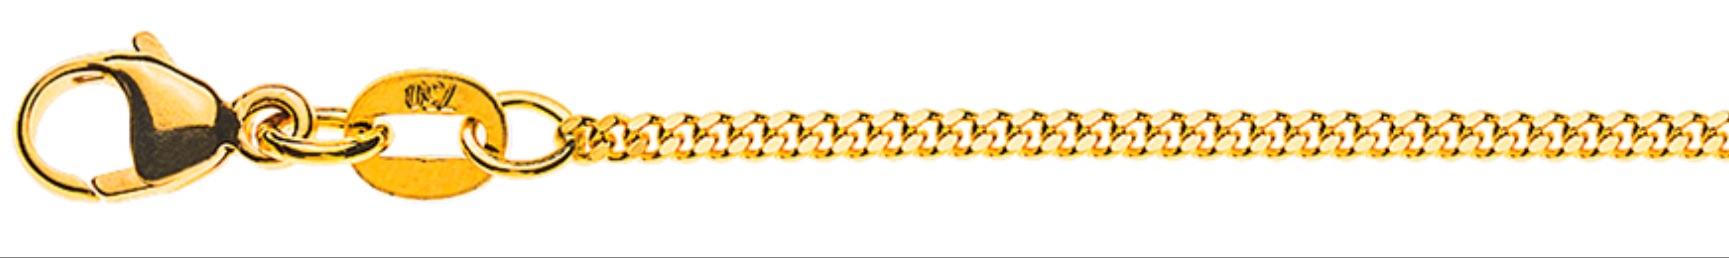 AURONOS Élégance Necklace yellow gold 14K curb chain polished 55cm 1.6mm